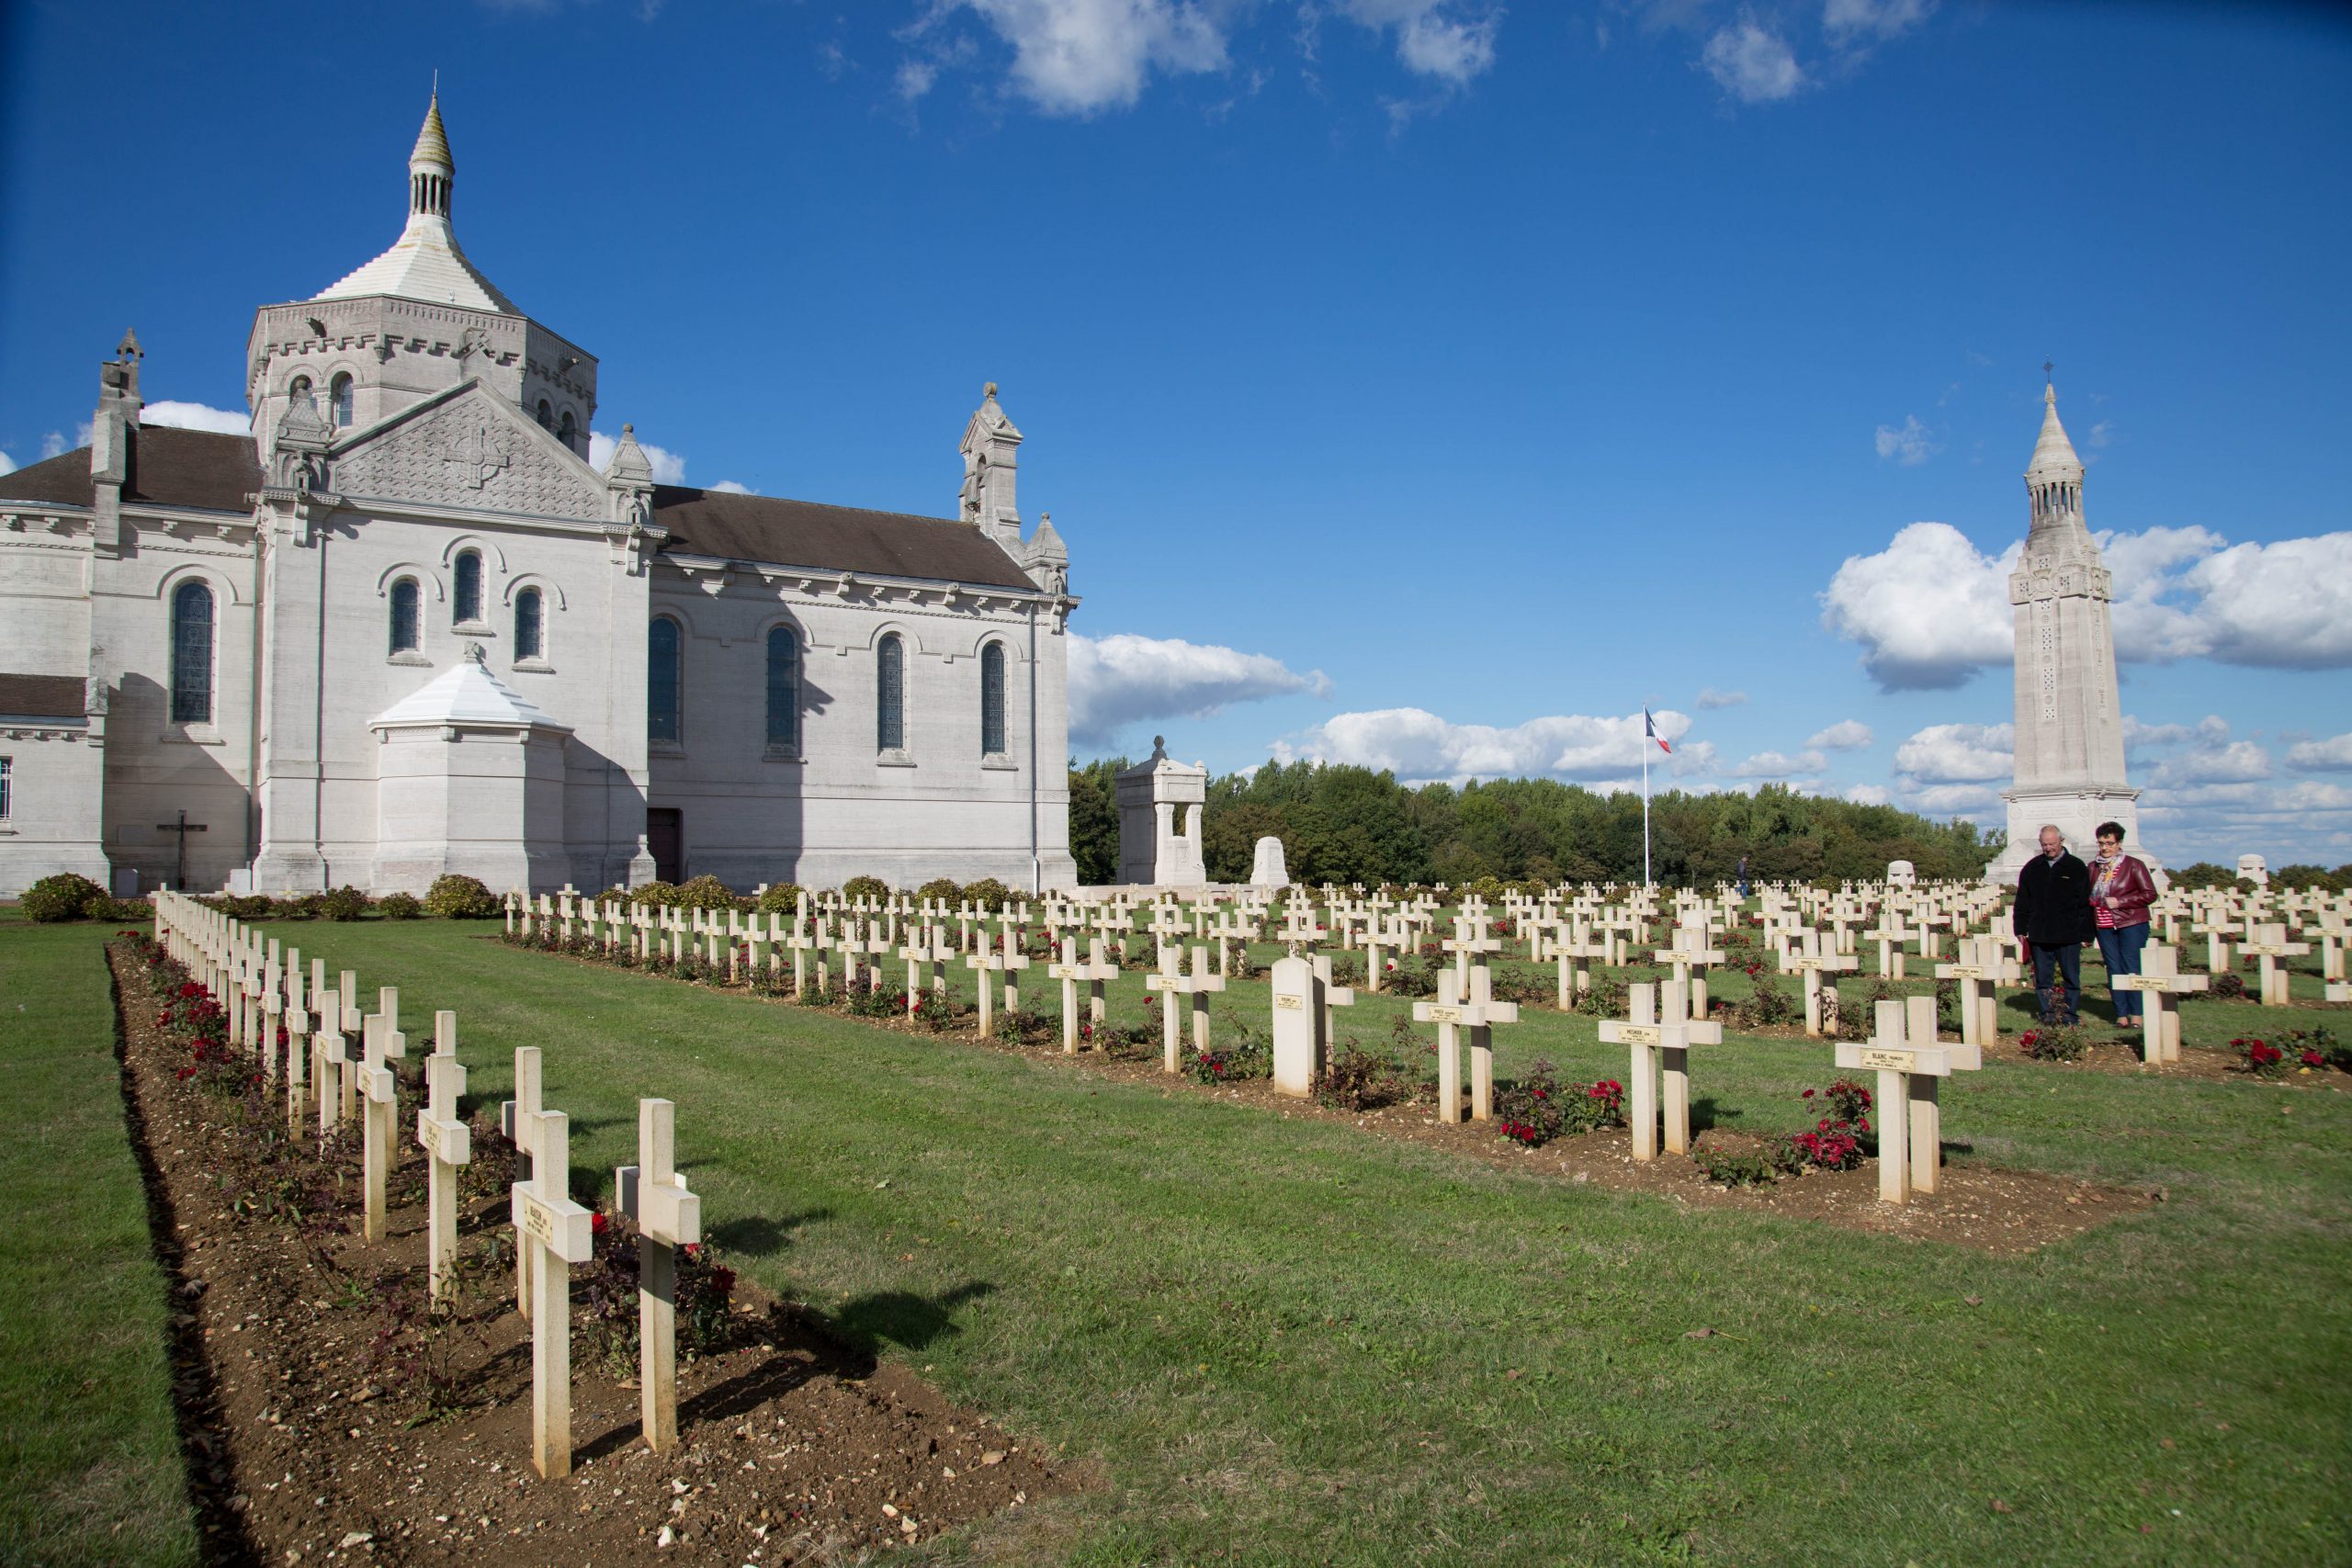 Nécropole Notre-Dame de Lorette, hauts lieux de mémoire de la Première Guerre mondiale en Nord-Pas-de-Calais. Lieu incontournable à visiter ©Aurélie Leclercq